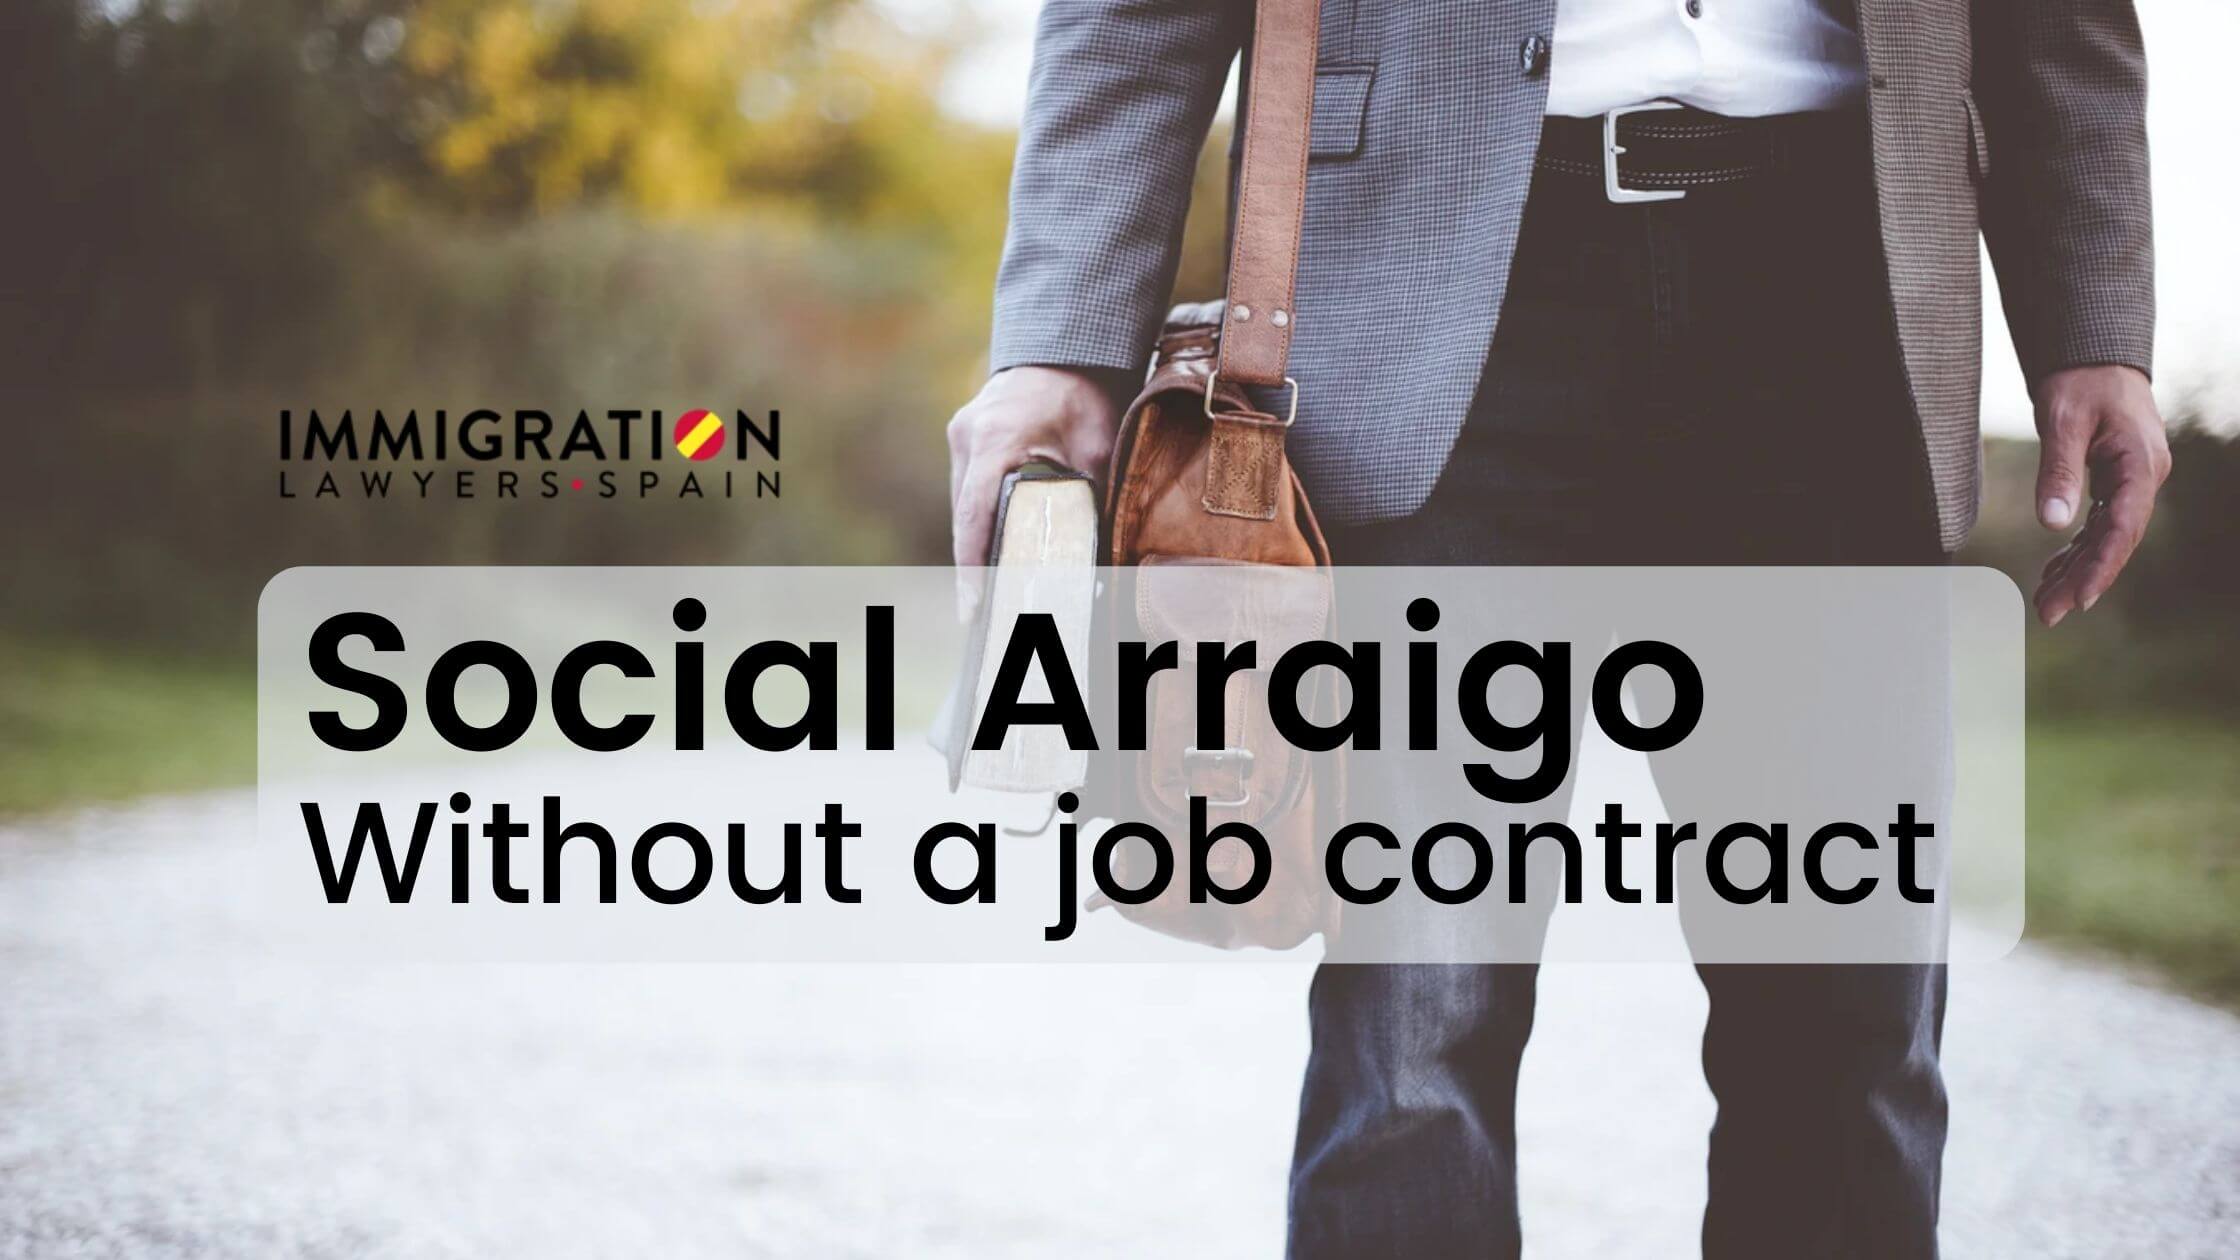 social arraigo without job contract